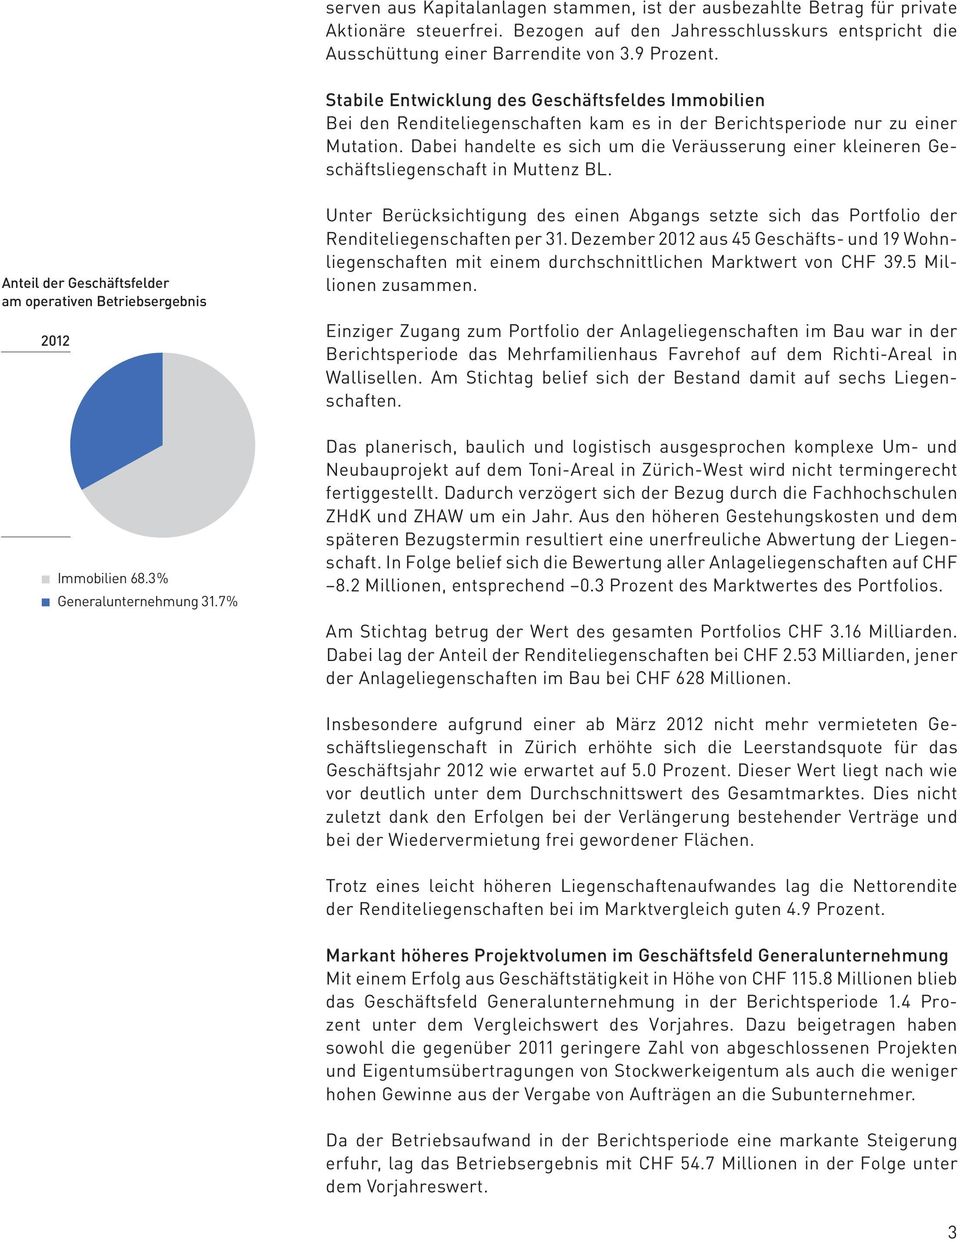 Dabei handelte es sich um die Veräusserung einer kleineren Geschäftsliegenschaft in Muttenz BL. Anteil der Geschäftsfelder am operativen Betriebsergebnis 2012 Immobilien 68.3% Generalunternehmung 31.